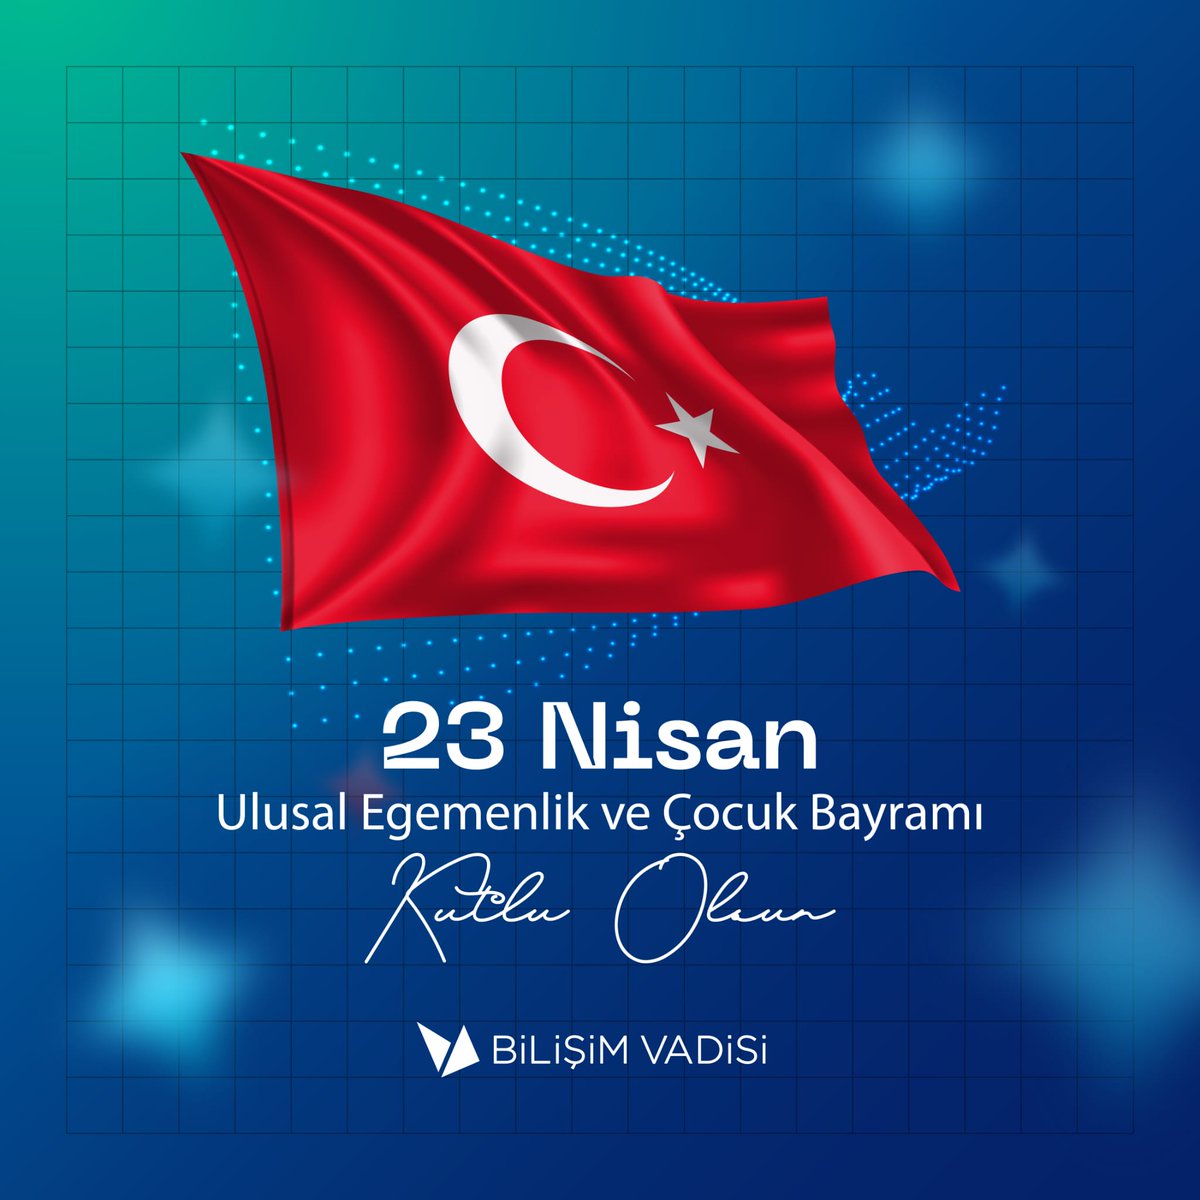 23 Nisan Ulusal Egemenlik ve Çocuk Bayramımız kutlu olsun! 🎈 #GelecekBurada sizlerle şekillenecek! 💫